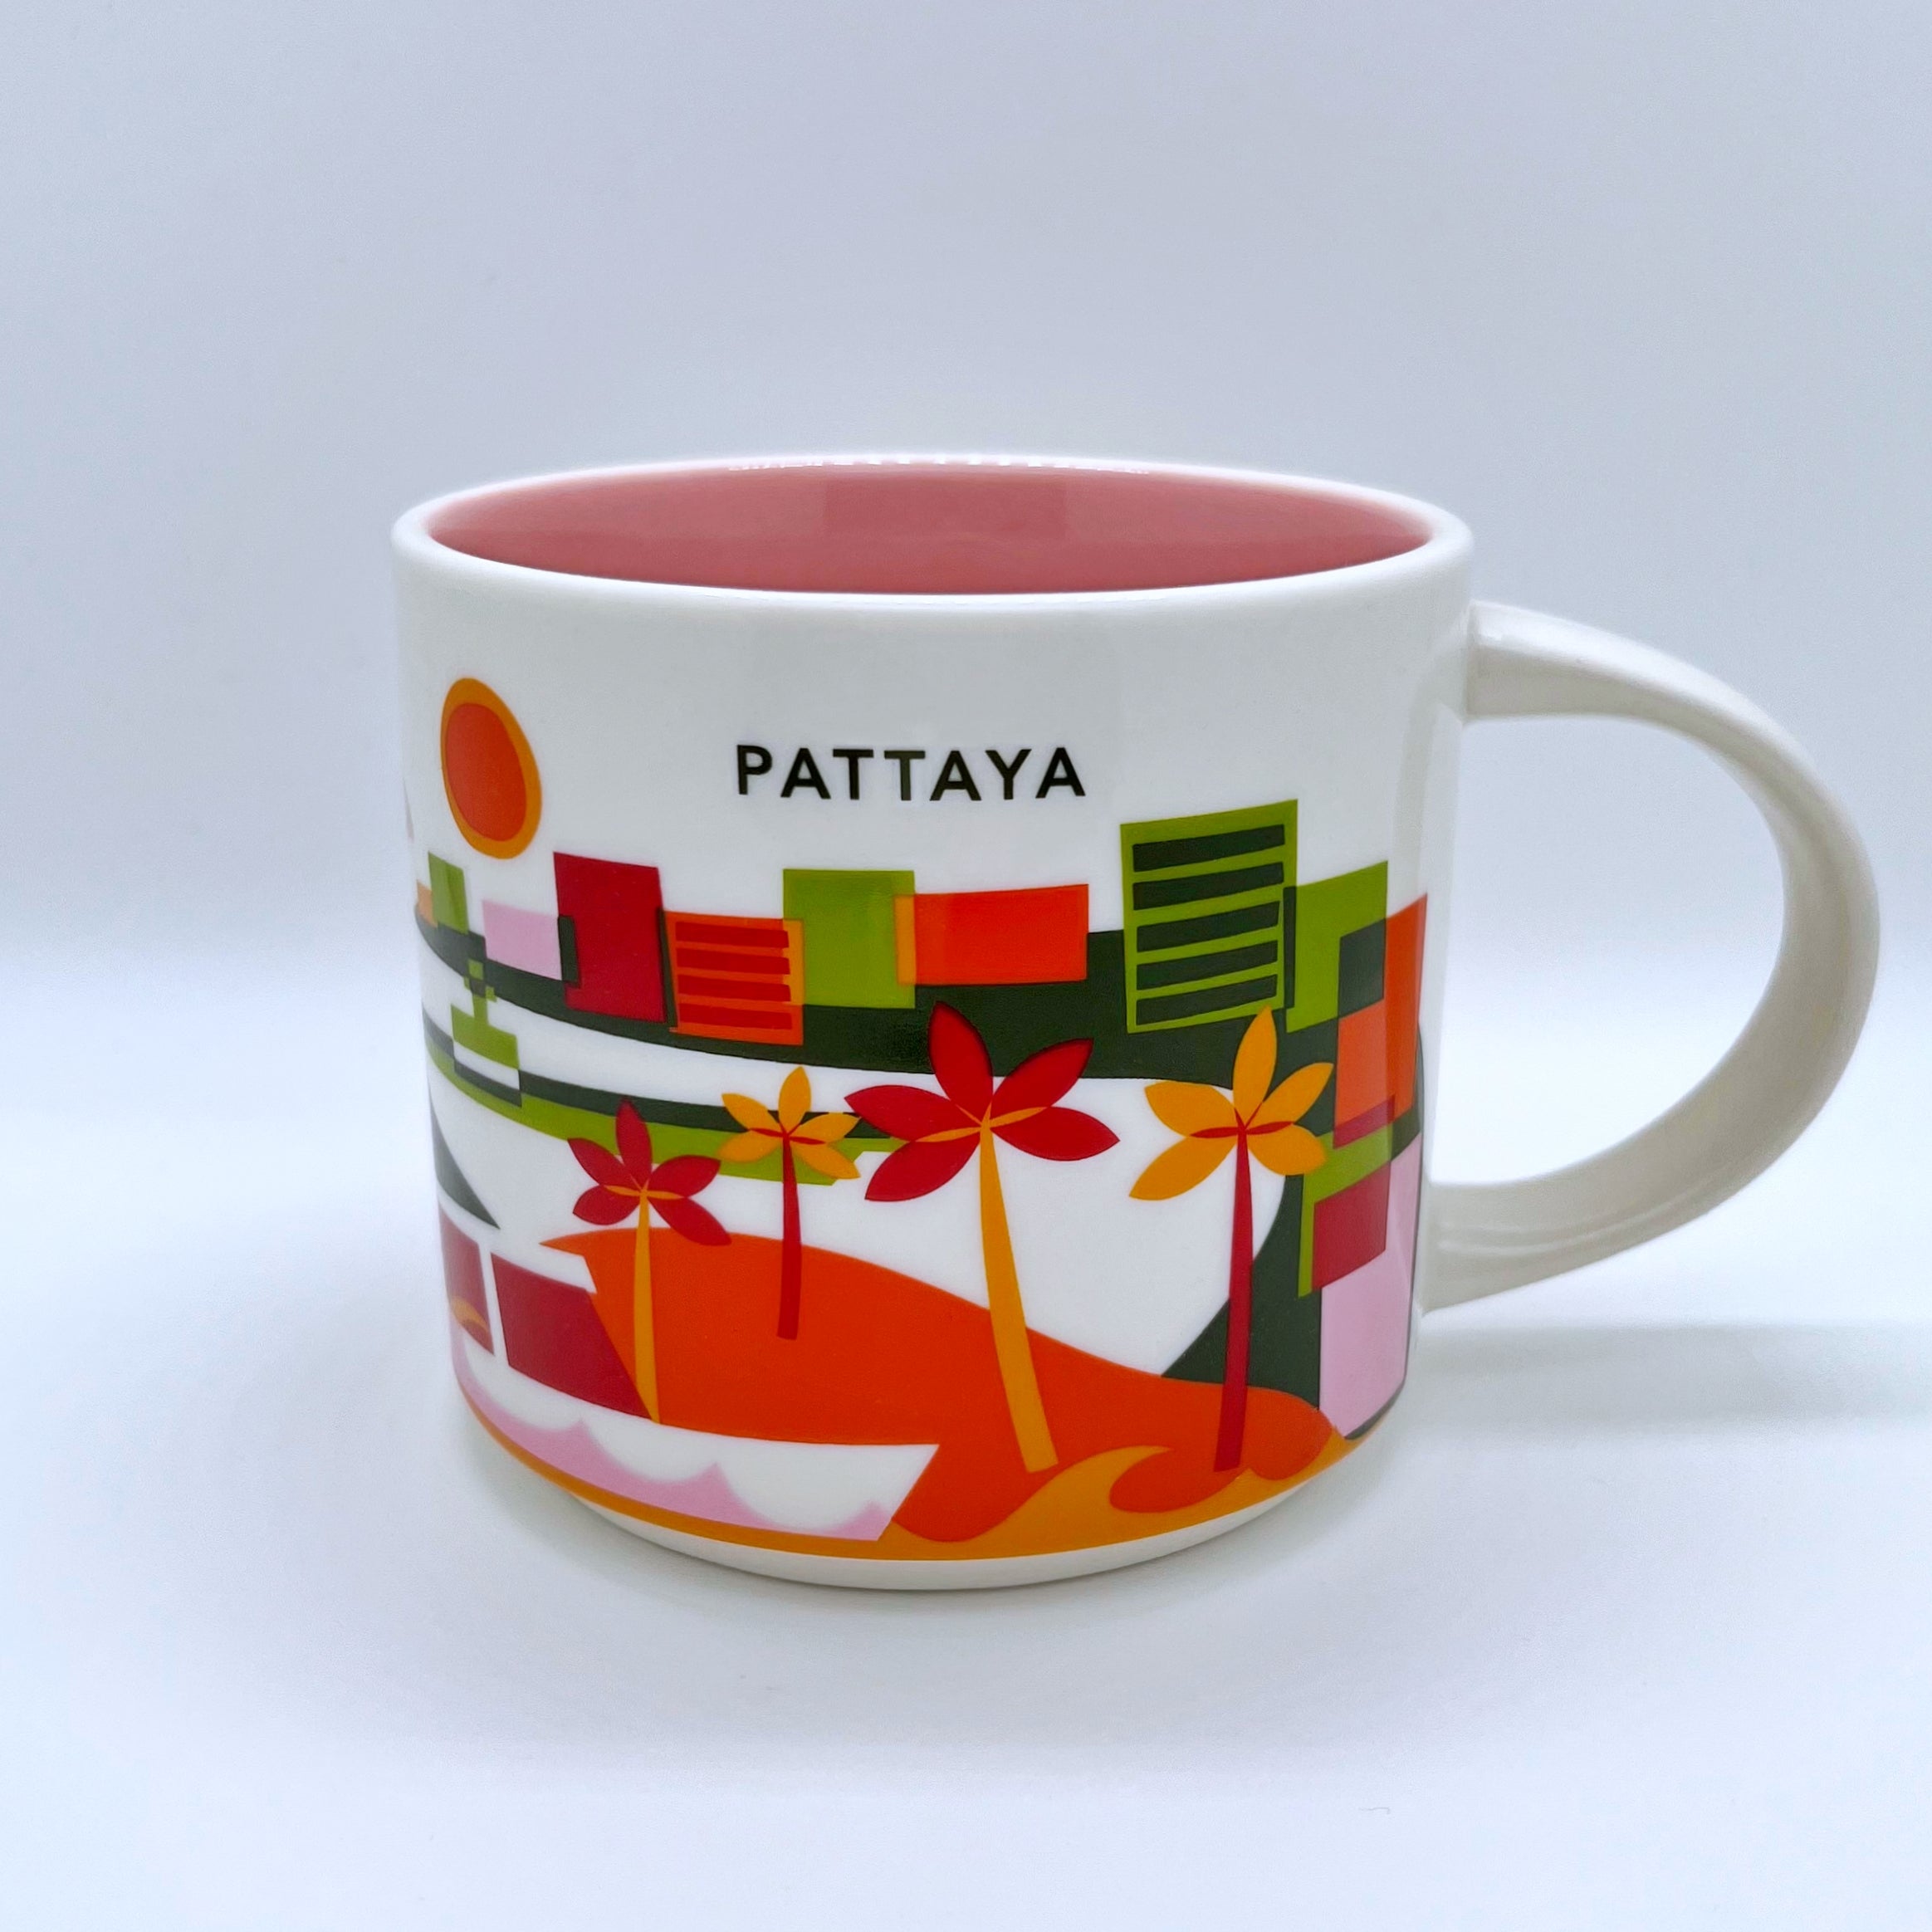 Kaffee Tee und Cappuccino Tasse von Starbucks mit gemalten Bildern aus der Stadt Pattaya